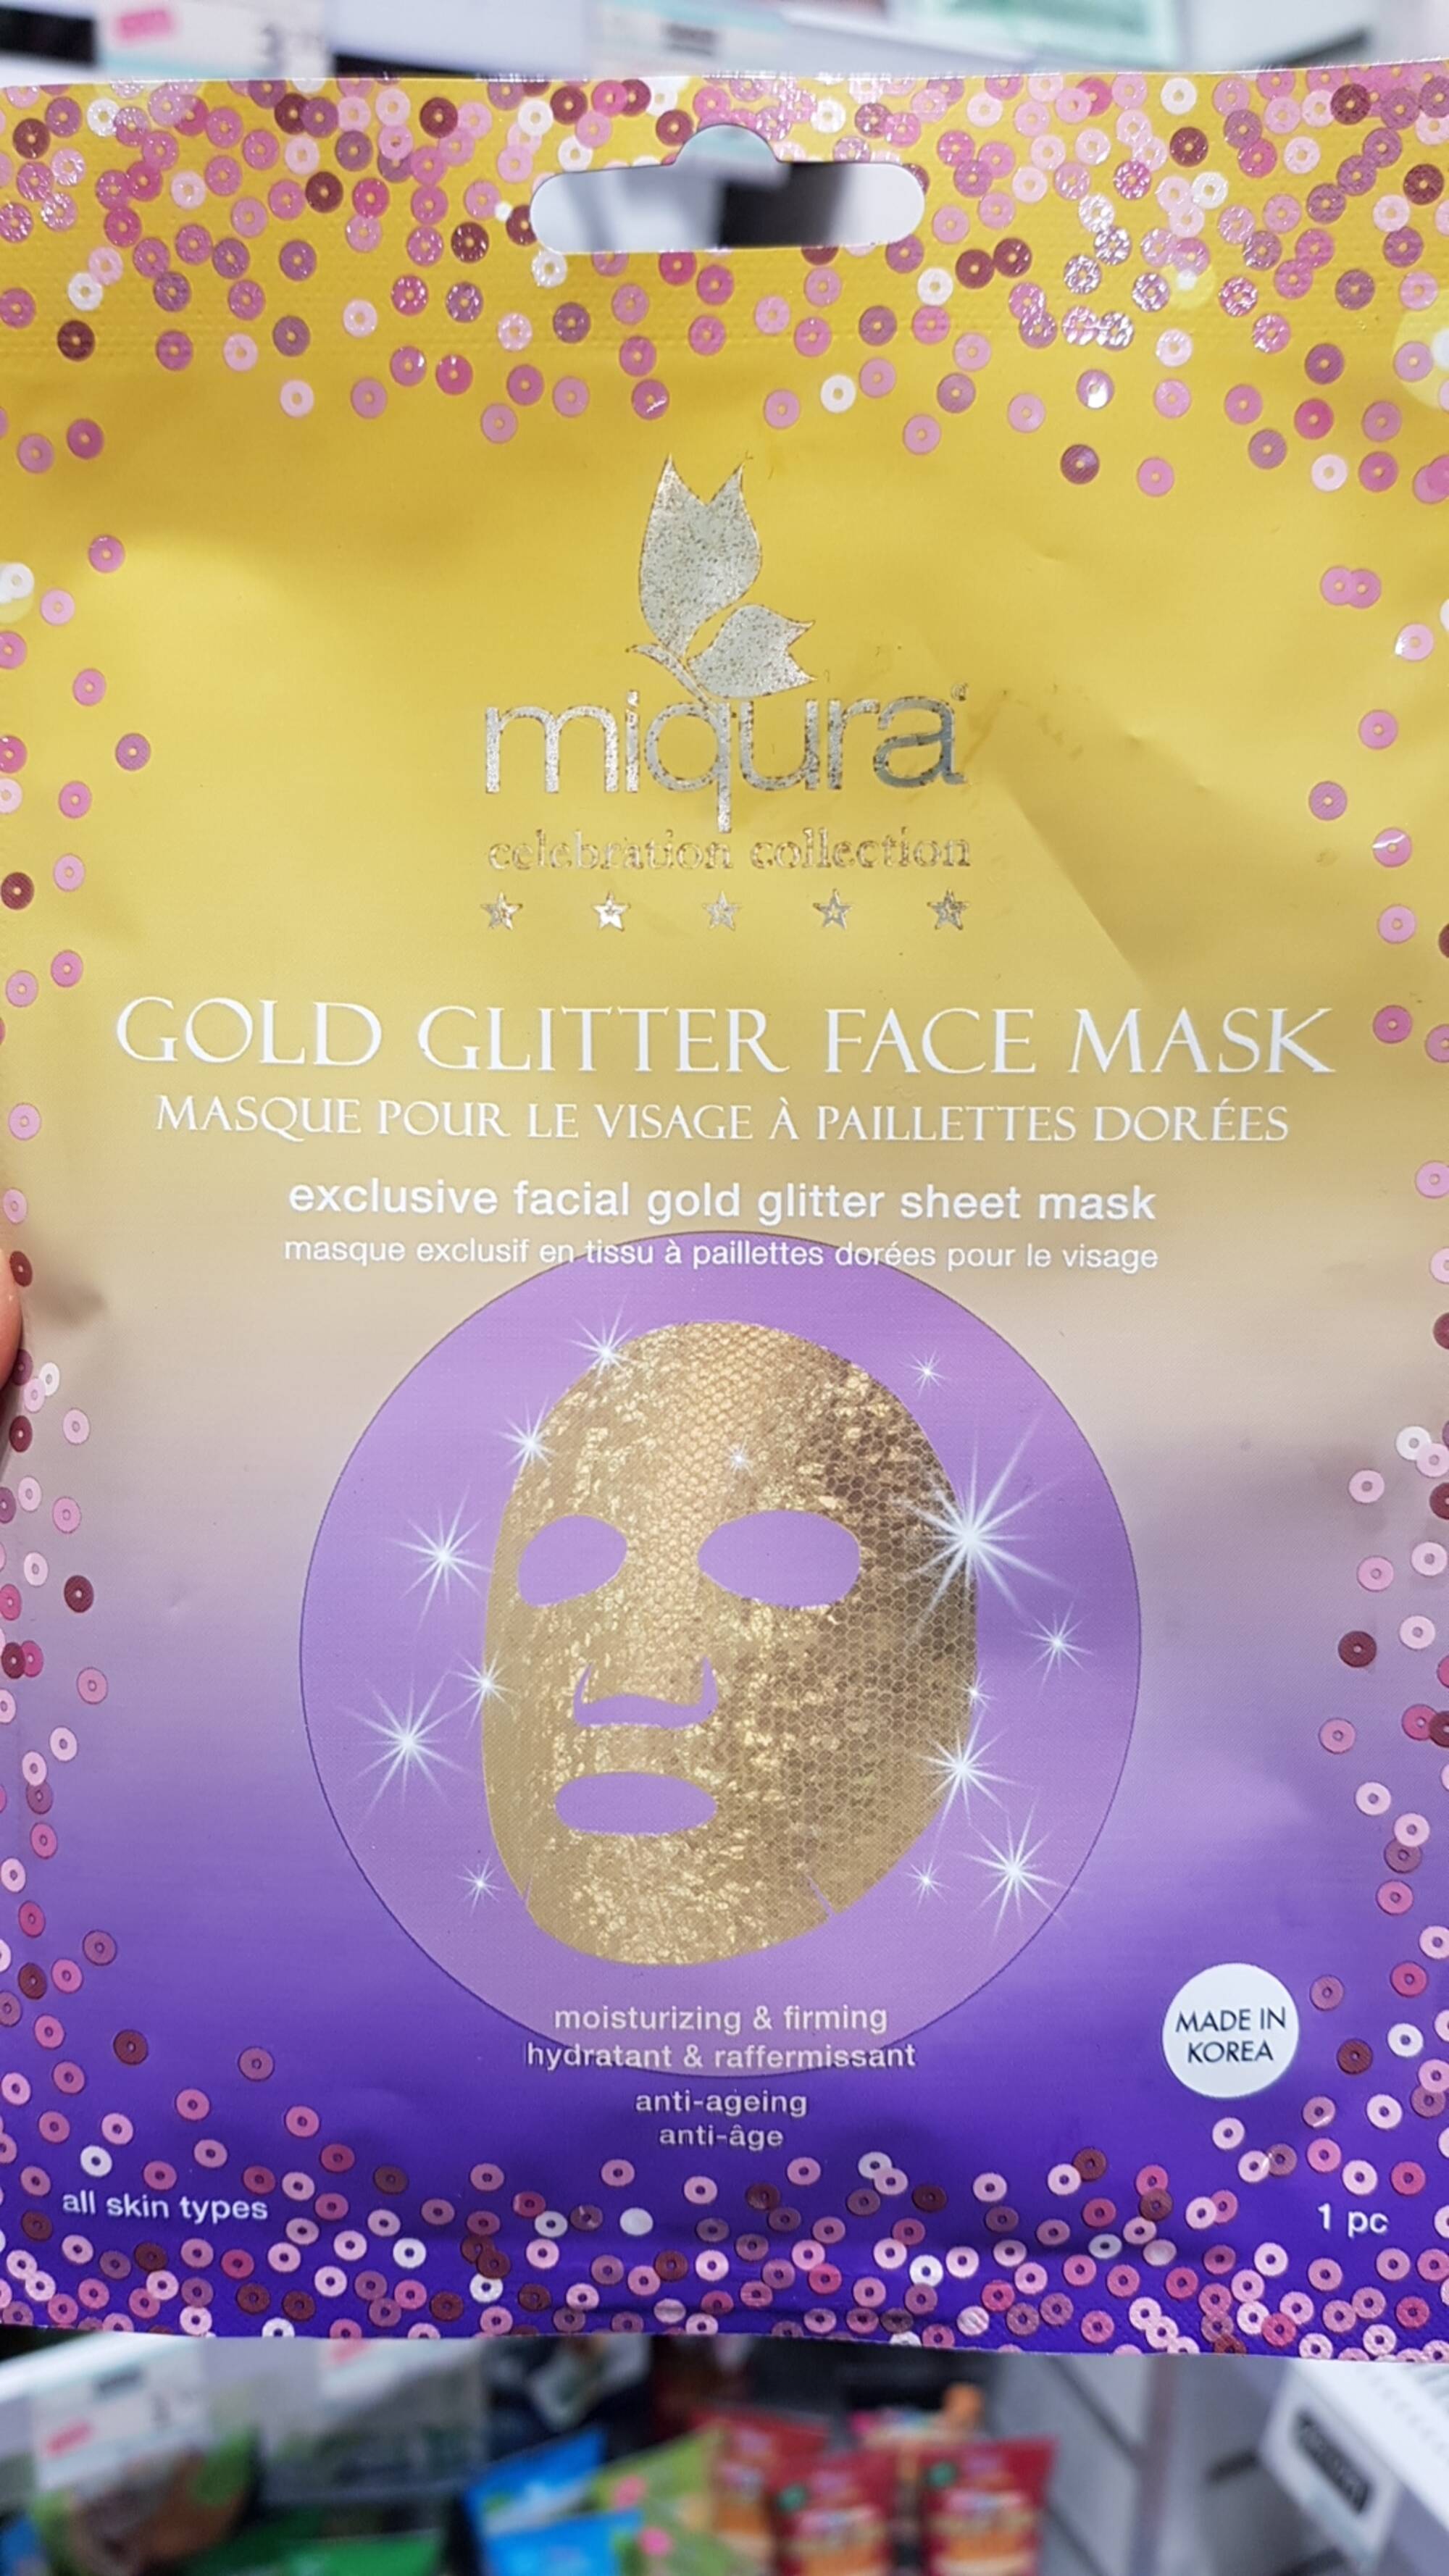 MIQURA - Paillettes dorées - Masque visage